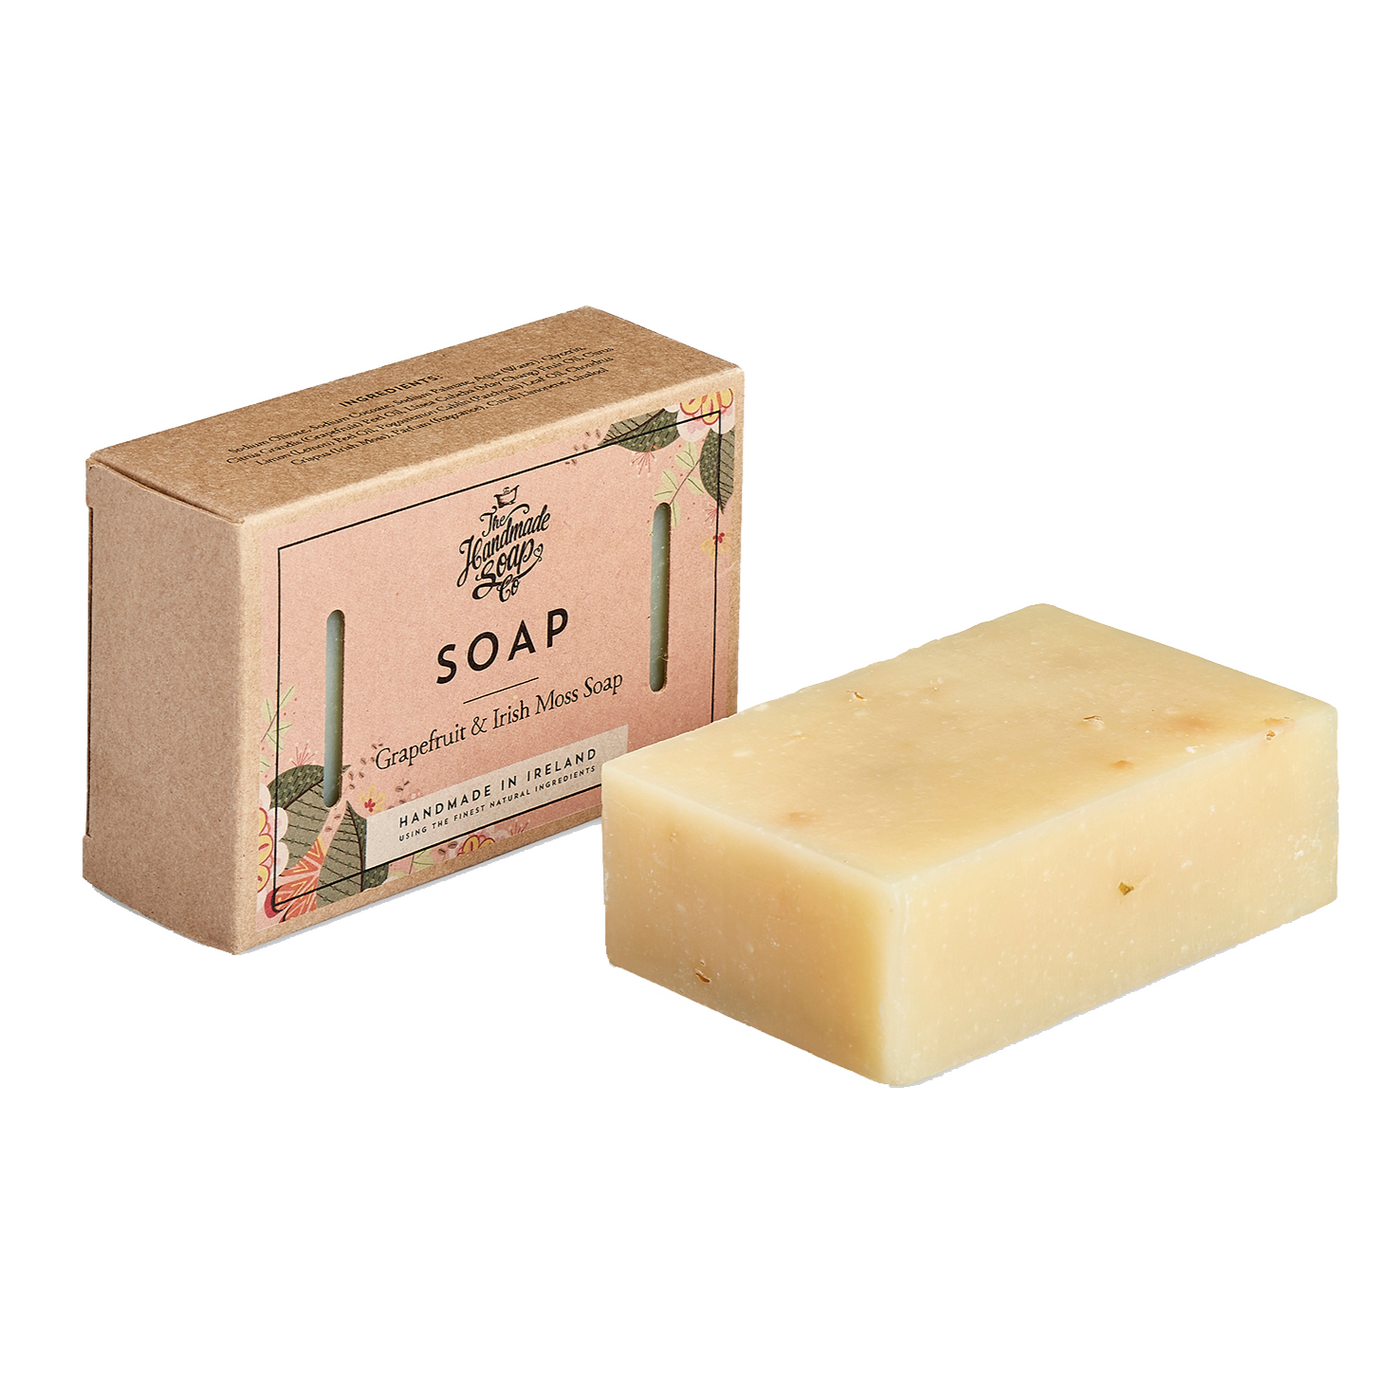 The Handmade Soap Company Soap Bar - Grapefruit & Irish Moss